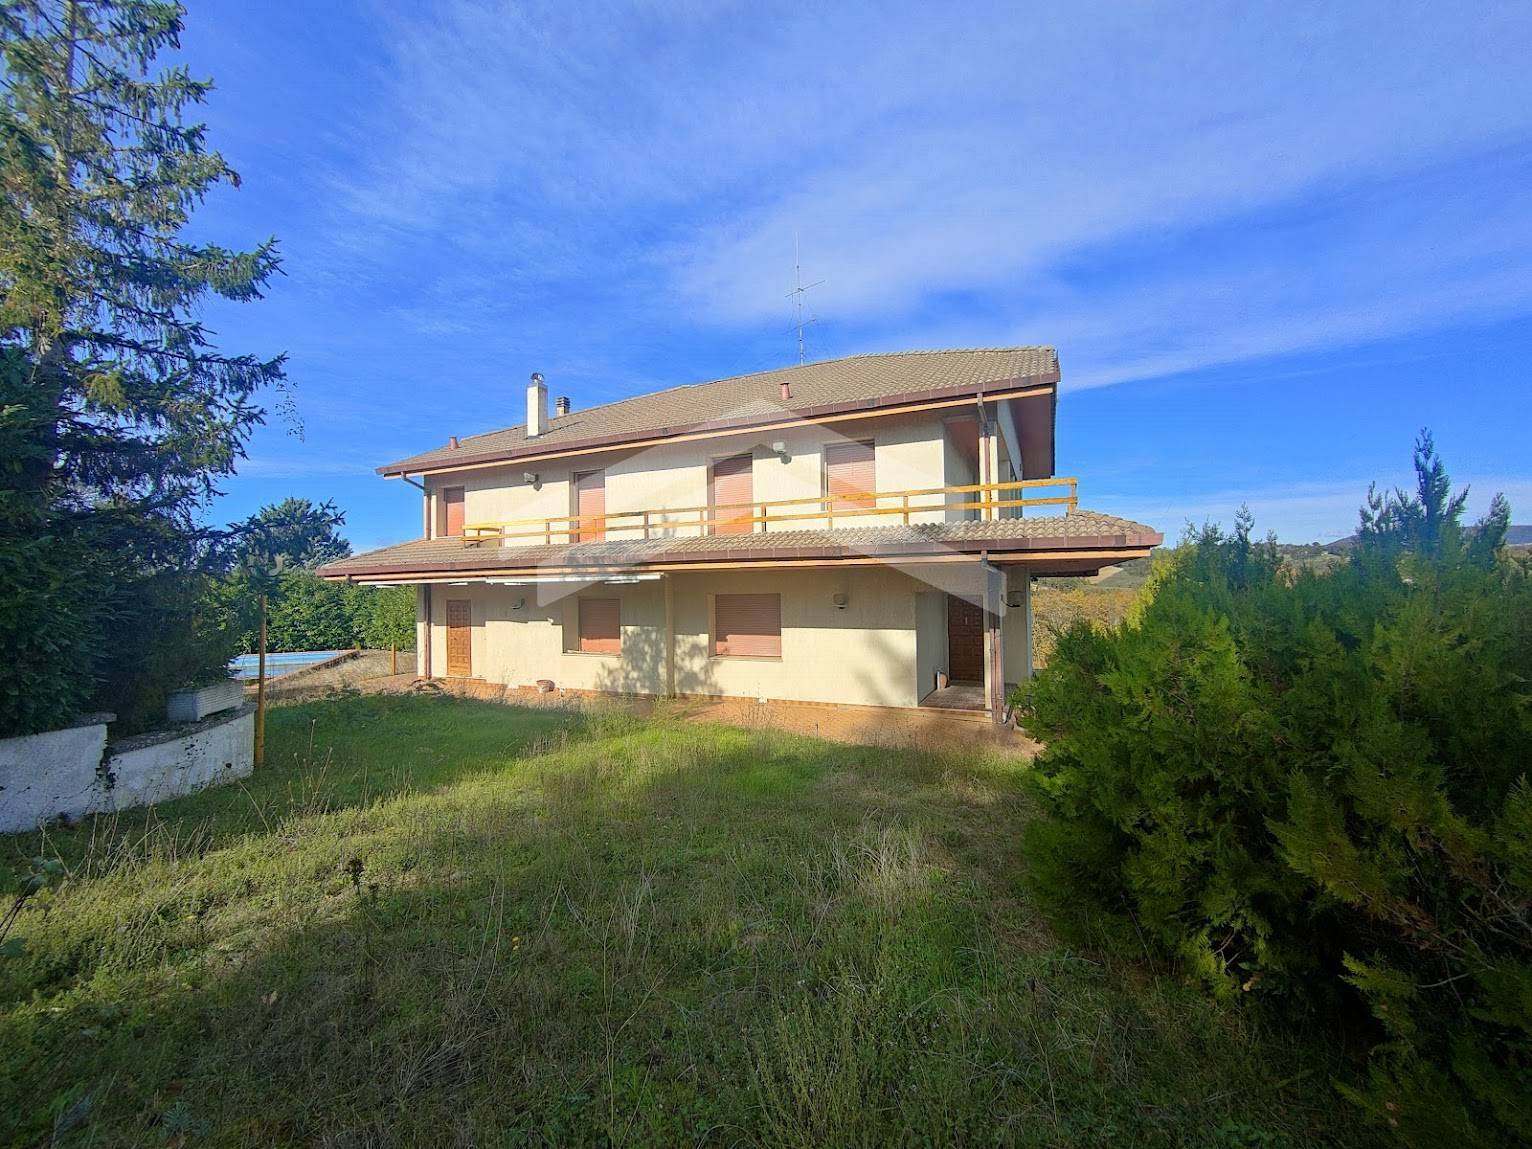 Villa in vendita a Vinchiaturo, 10 locali, prezzo € 210.000 | PortaleAgenzieImmobiliari.it